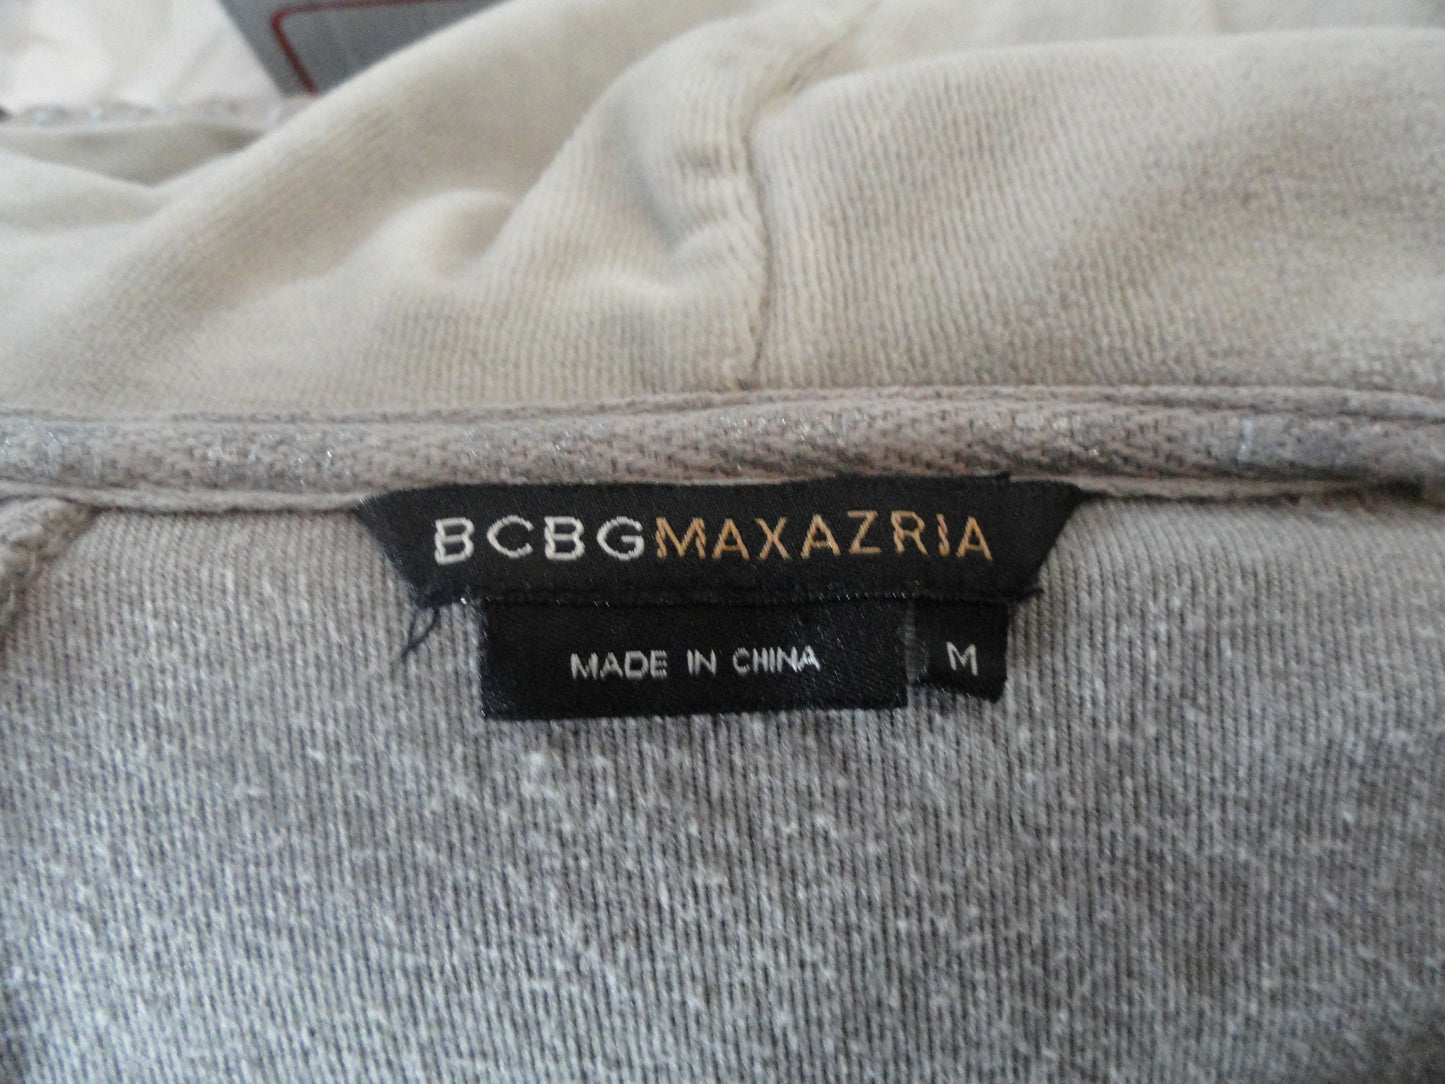 BCBG MAXAZRIA Hoodie Soft Grey Size M SKU 000227-2